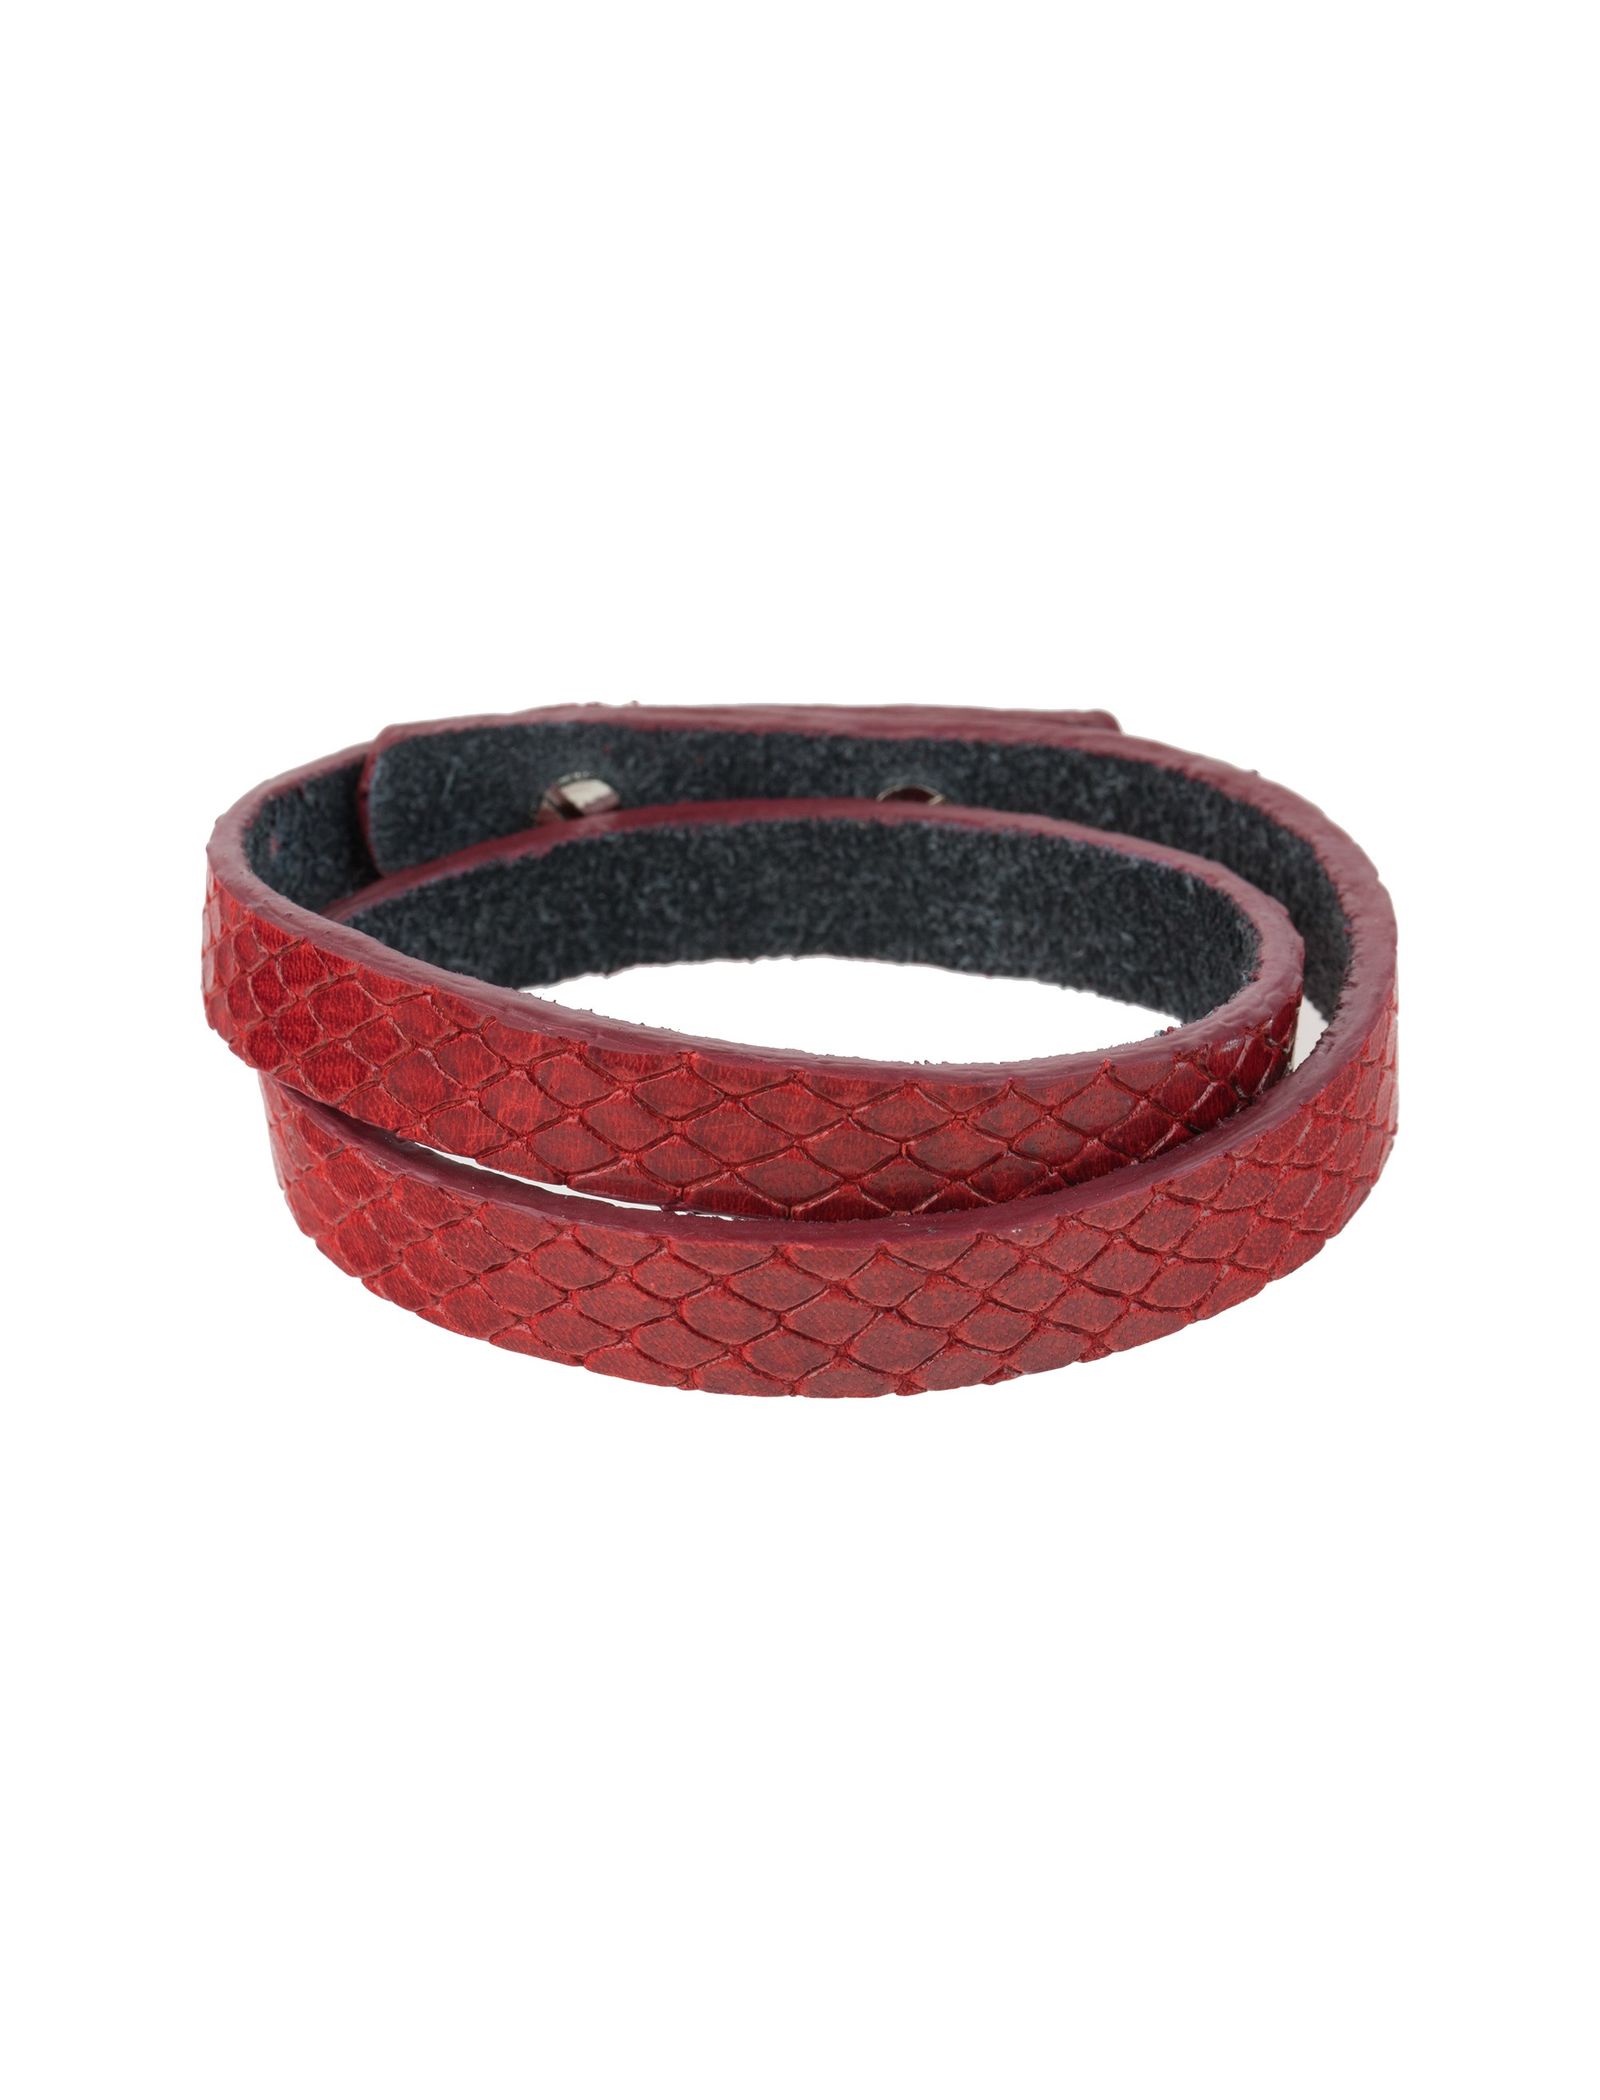 دستبند چرم زنانه - ماکو دیزاین تک سایز - قرمز - 1